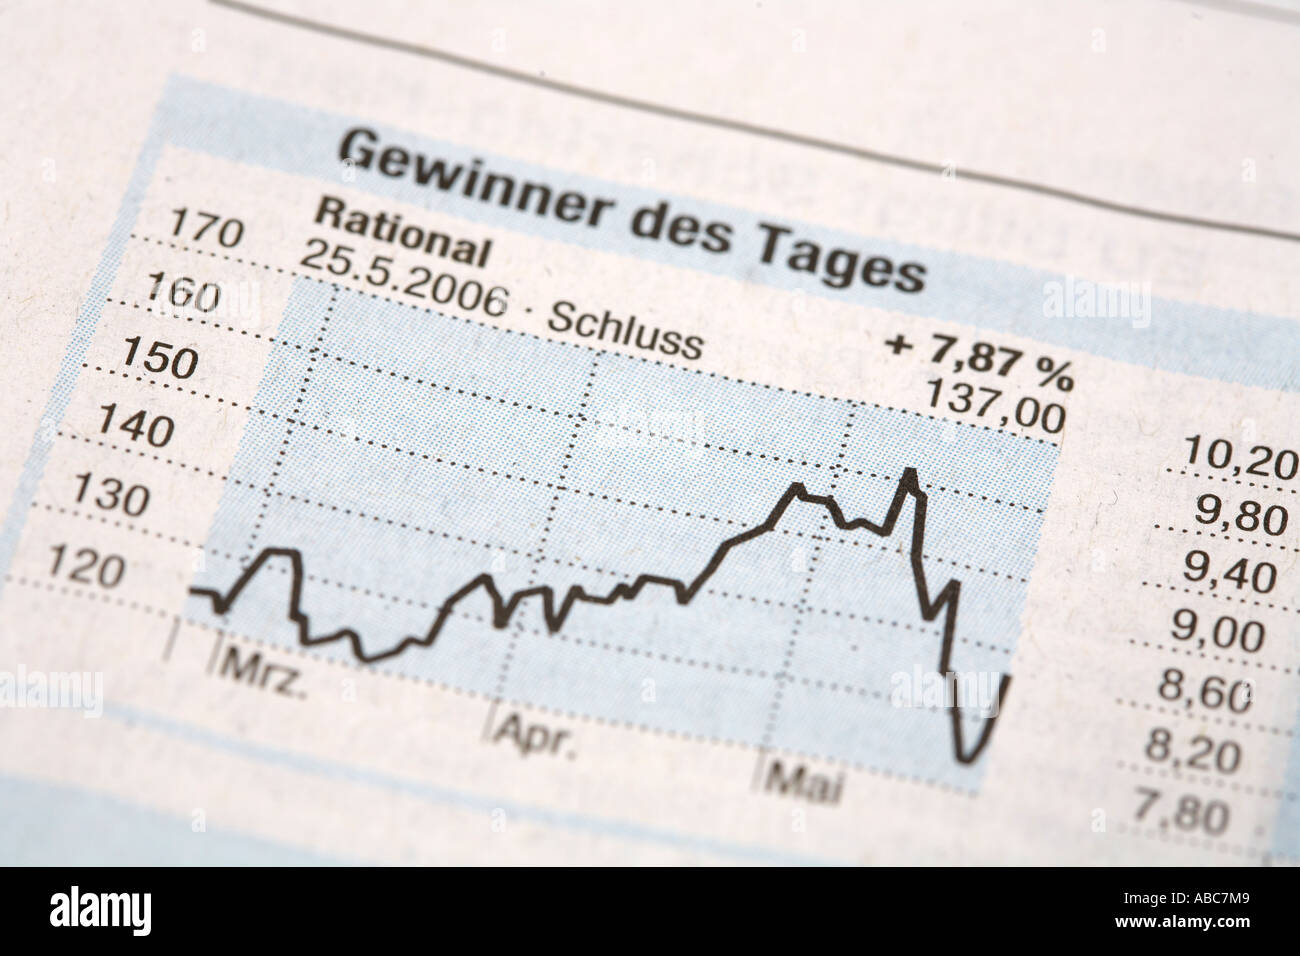 Gewinner des Tages Rational 2006 im Stocke Austausch zu ergänzen, der die Süddeutsche Süddeutsche Zeitung Stockfoto